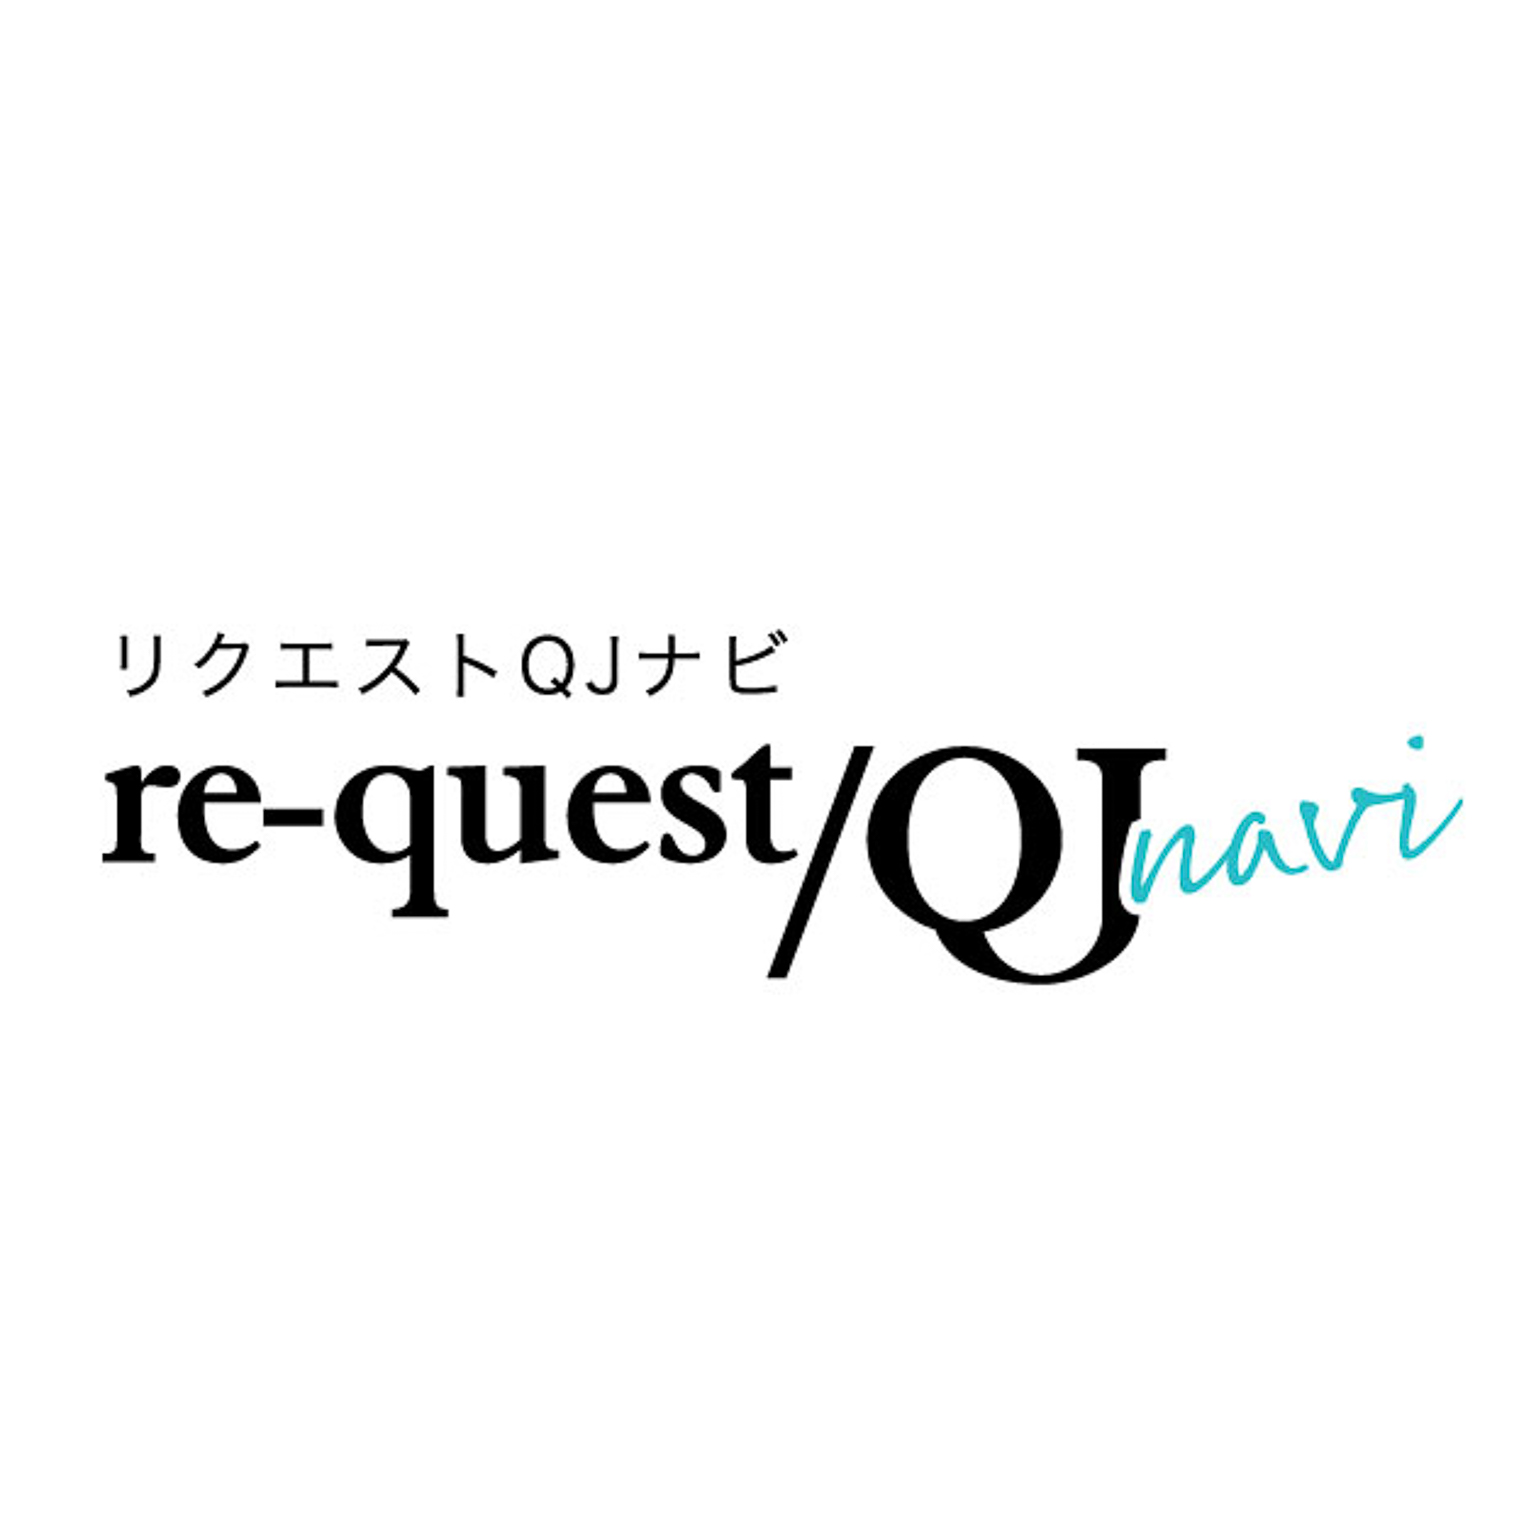 re-quest/QJ navi-インタビュー掲載-